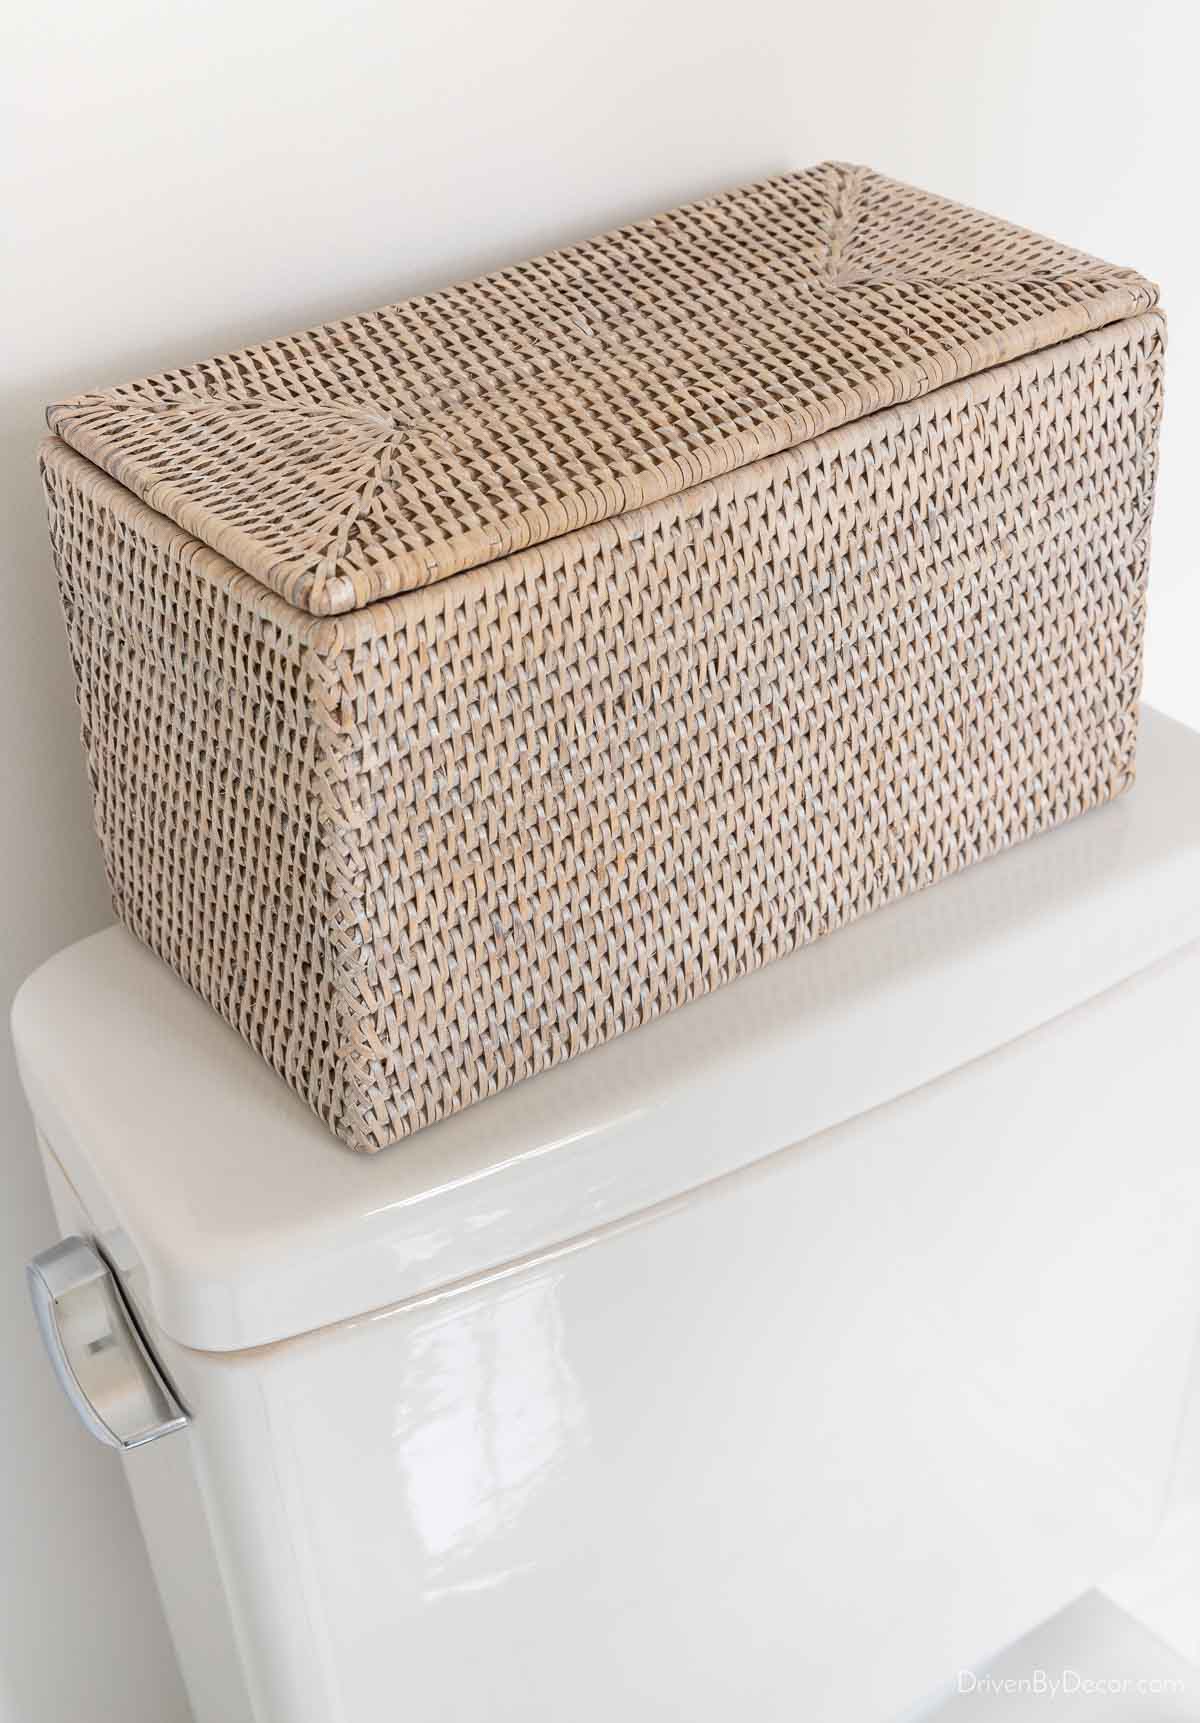 Woven storage box as toilet tank decor idea